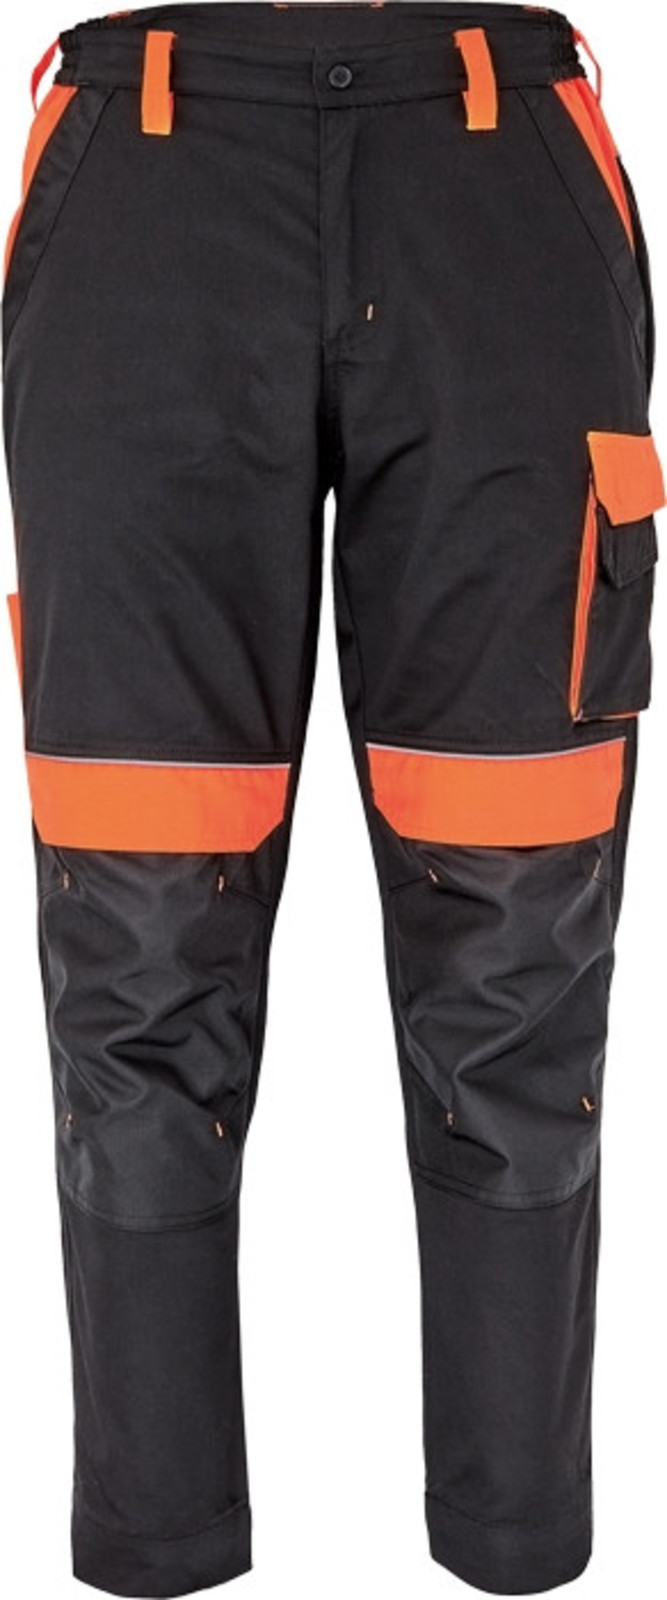 Pracovné nohavice Cerva Max Vivo pánske  - veľkosť: 52, farba: čierna/oranžová